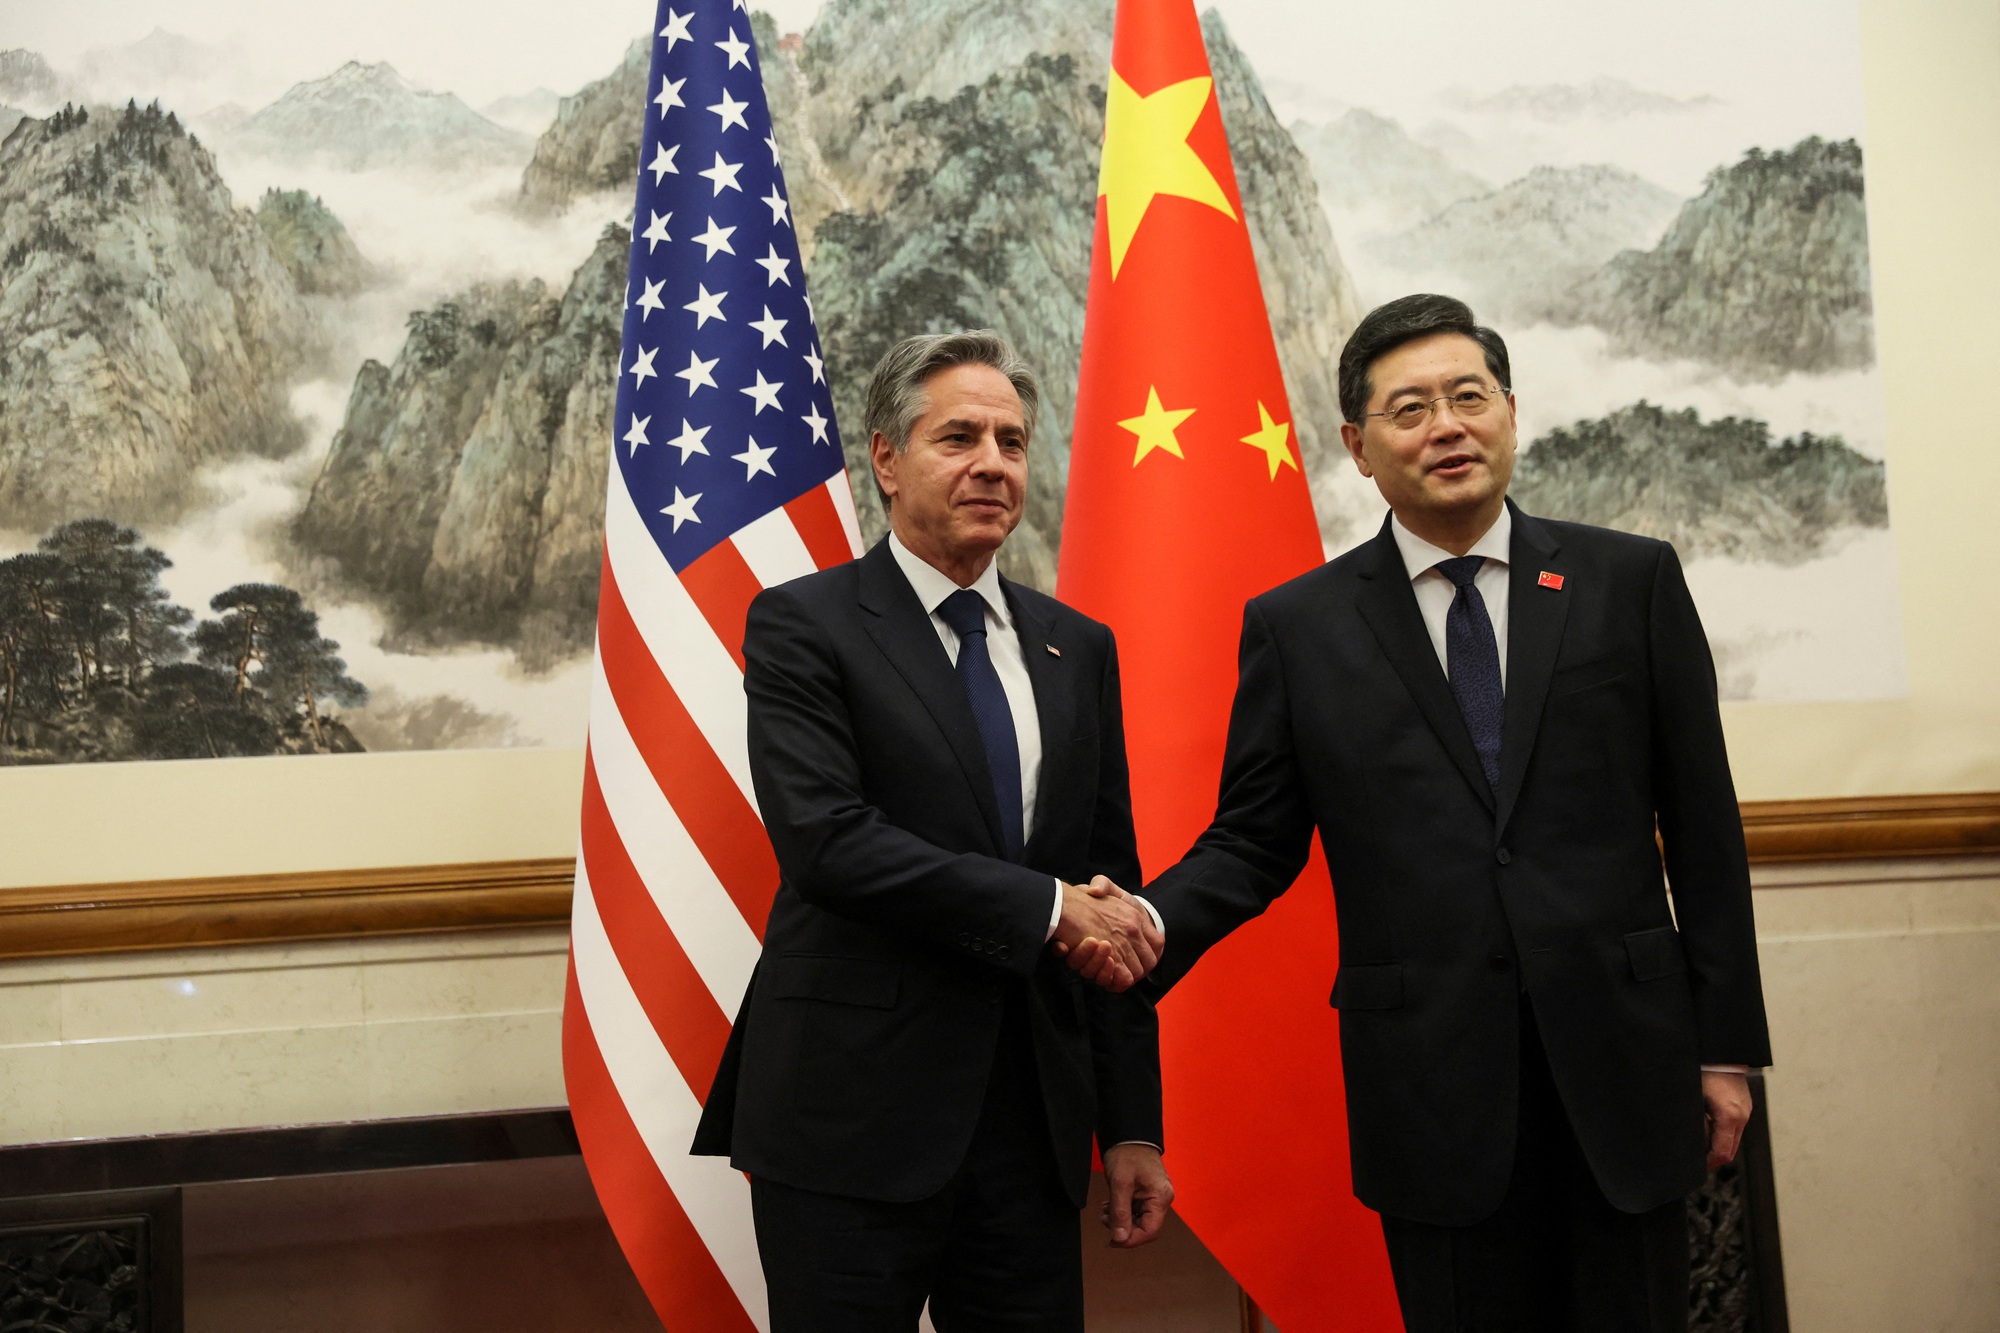 Ngoại trưởng Mỹ và Trung Quốc đã thảo luận 'thẳng thắn' những vấn đề gì? - Ảnh 1.